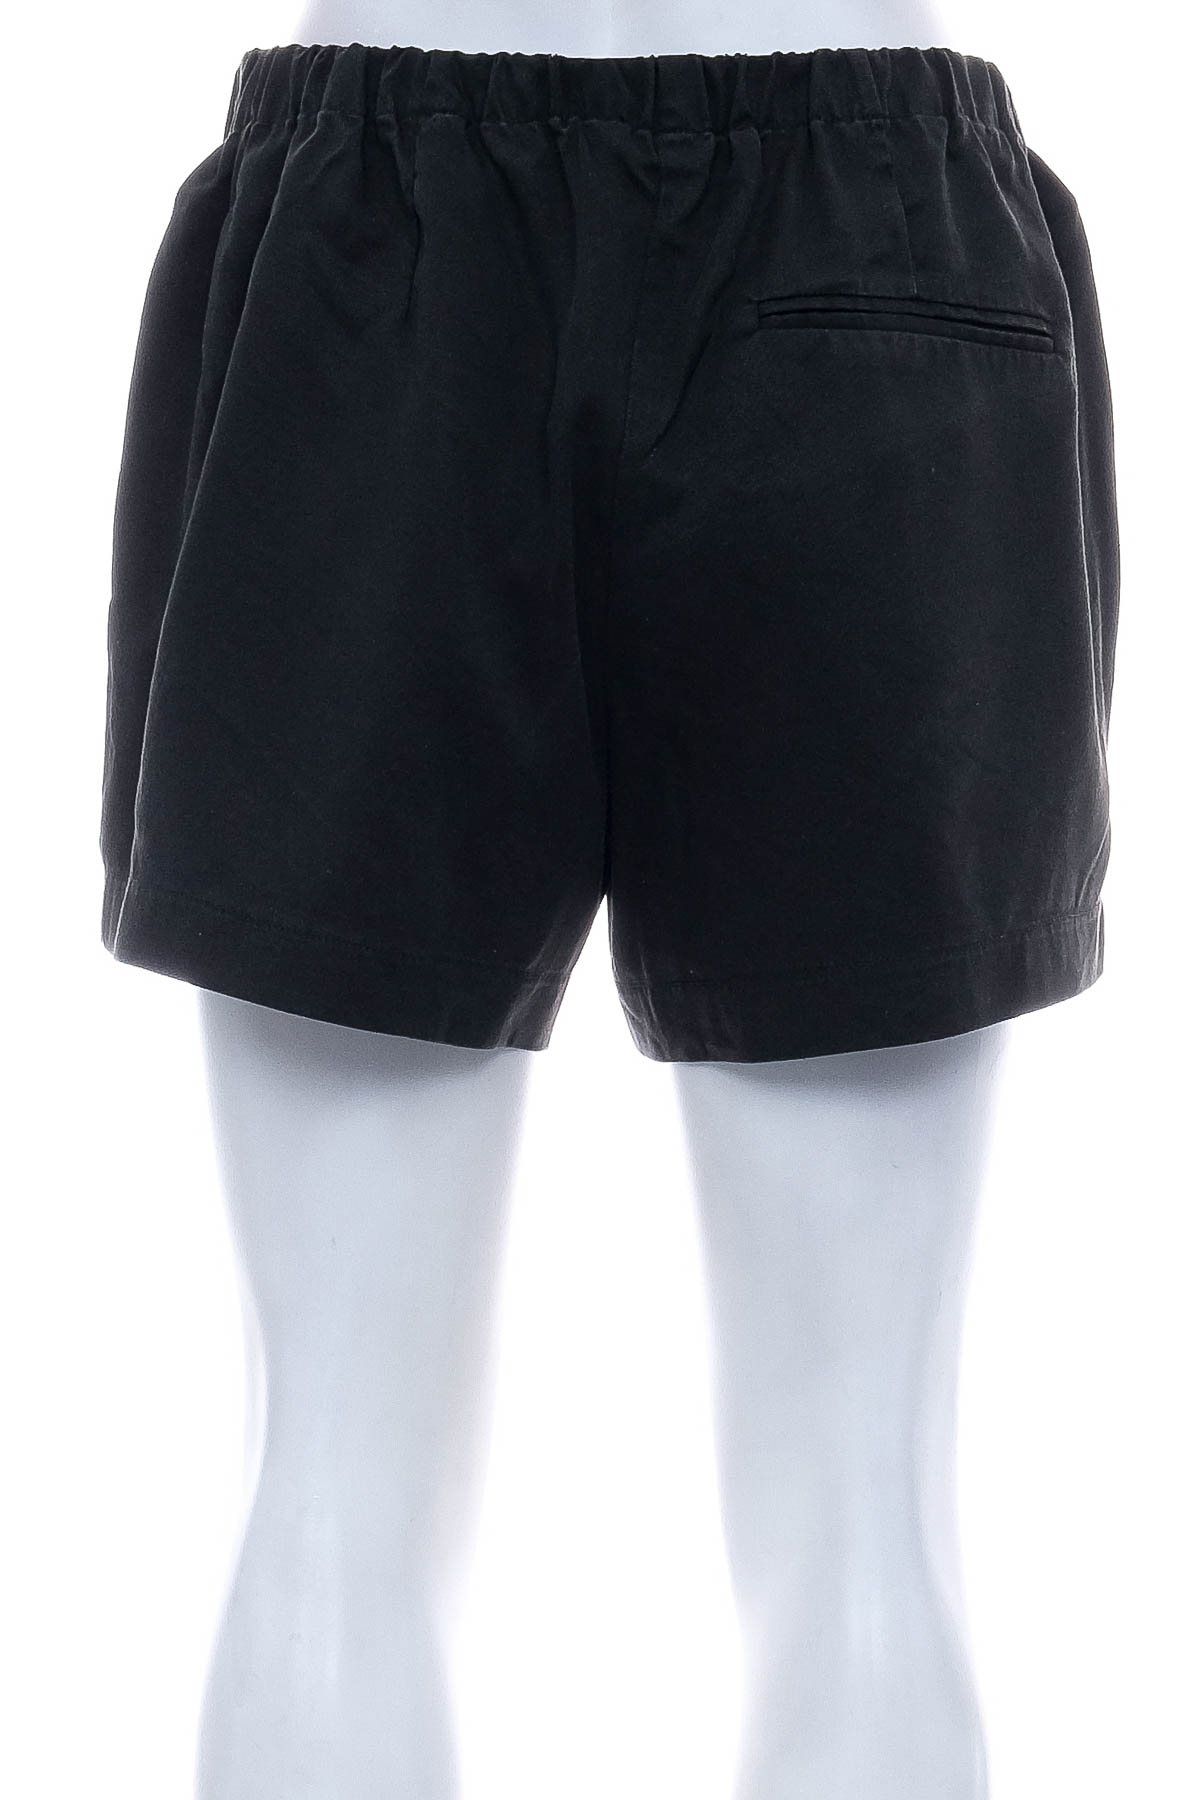 Female shorts - SISSY - BOY - 1